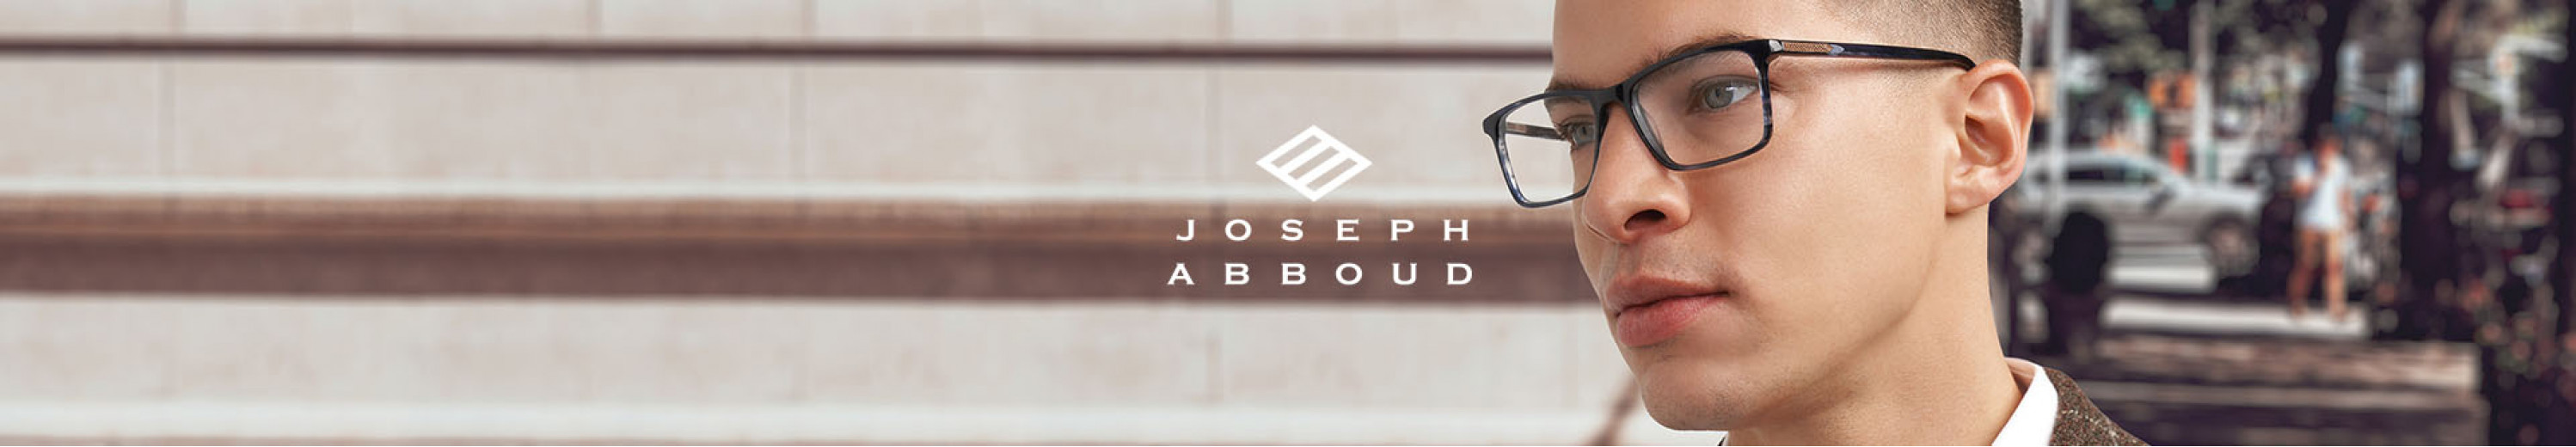 Joseph Abboud Eyeglasses